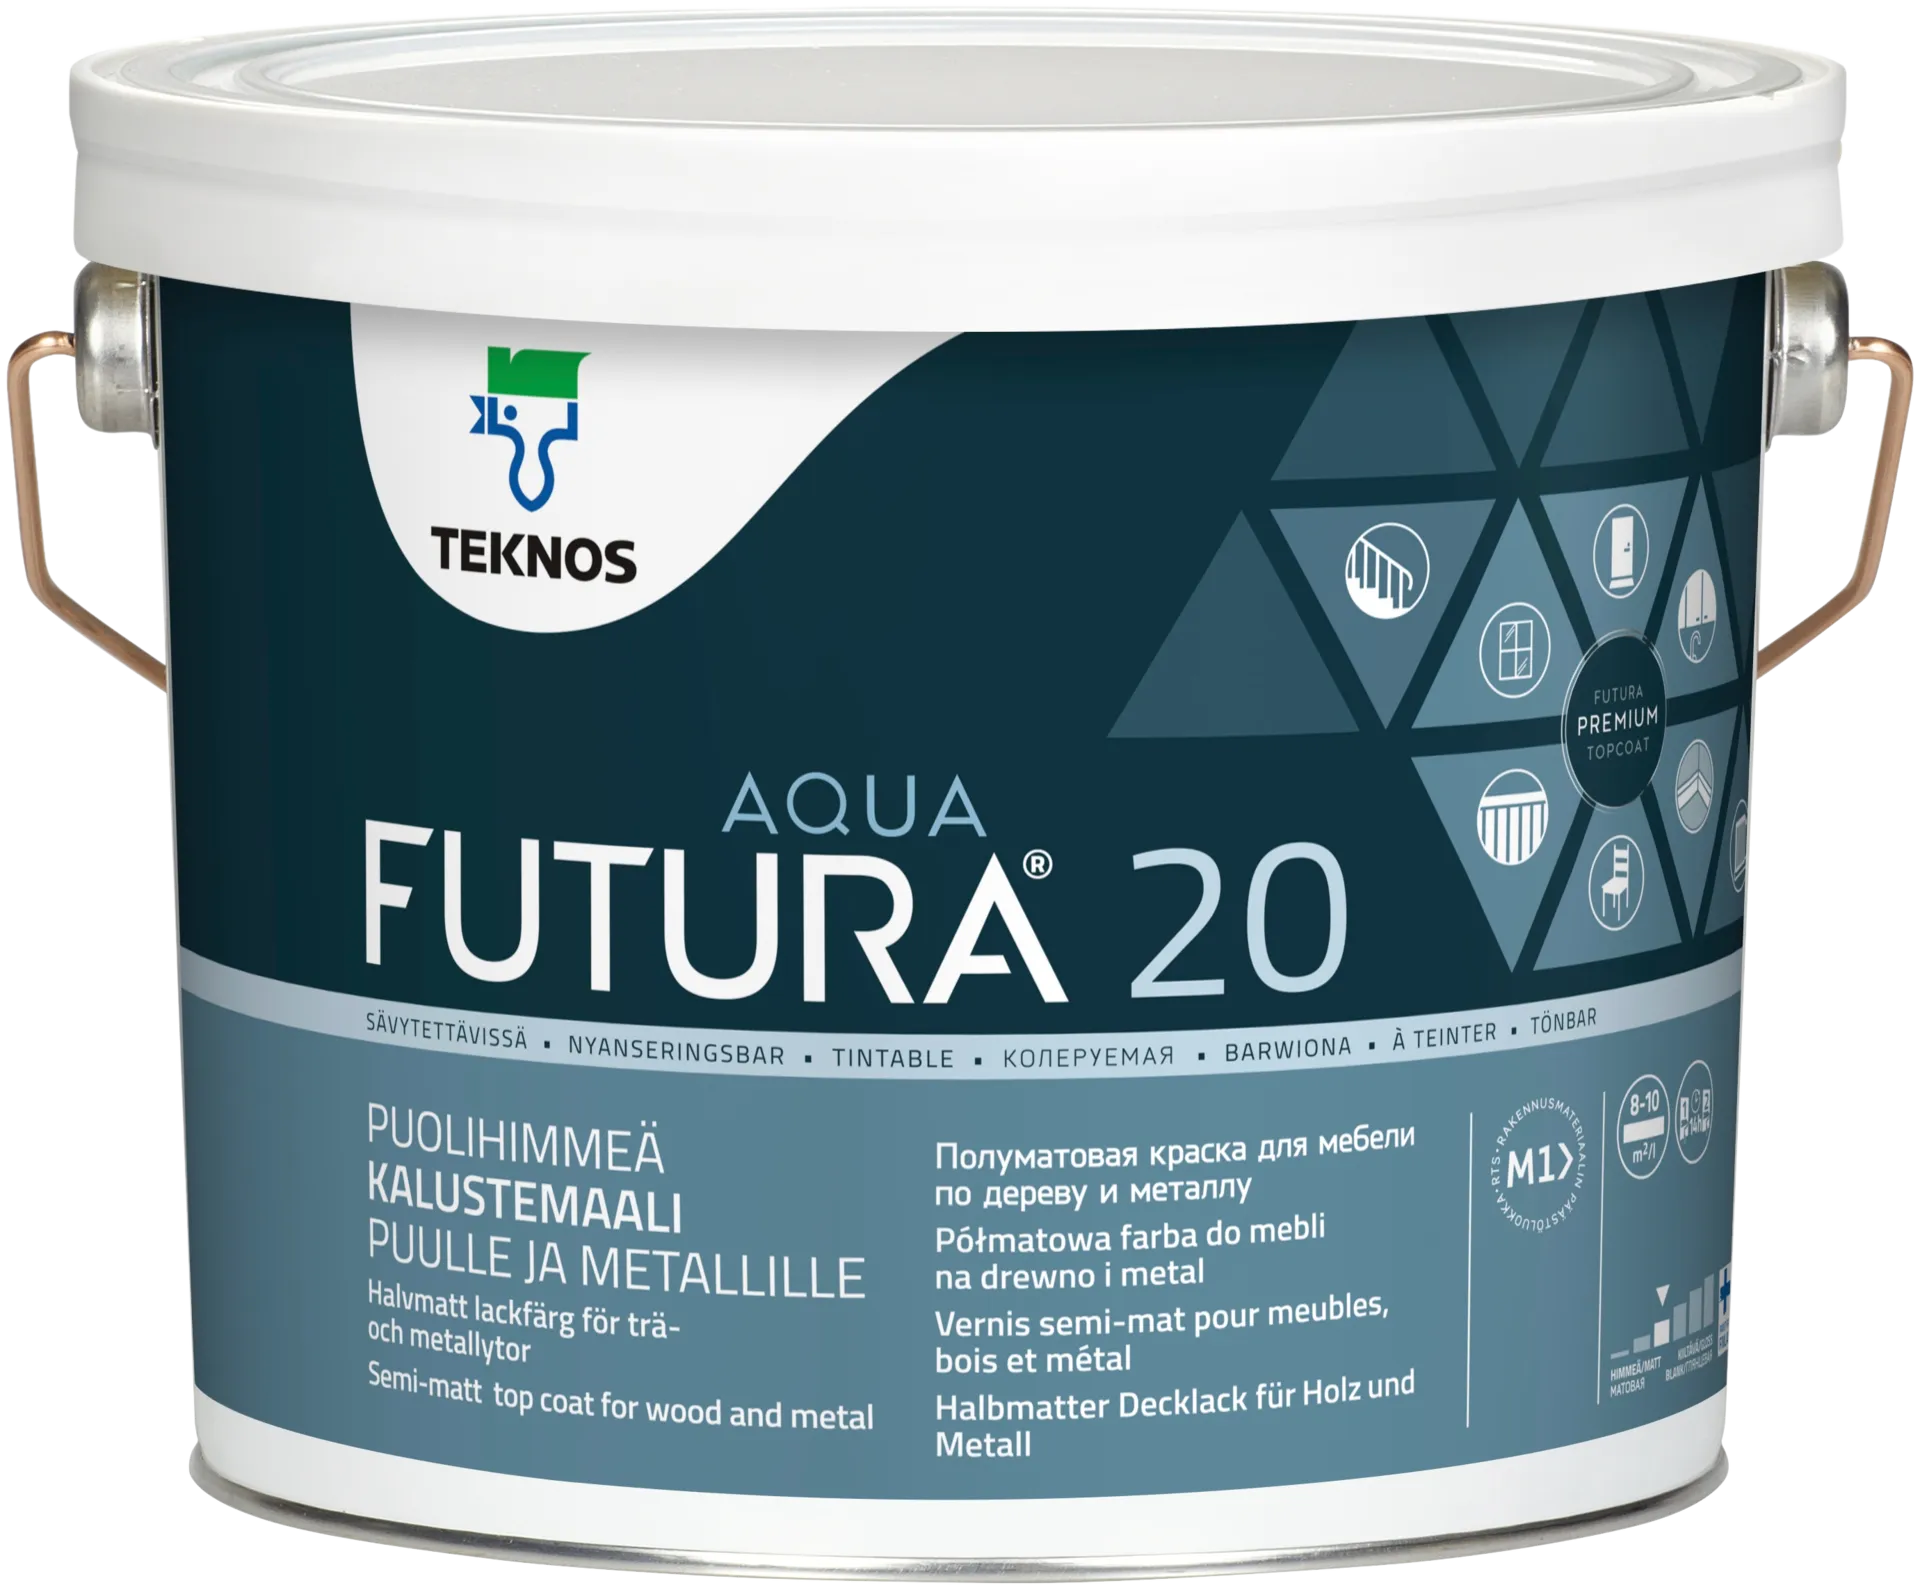 Teknos Futura Aqua 20 Kalustemaali 2,7L listavalkoinen puolihimmeä